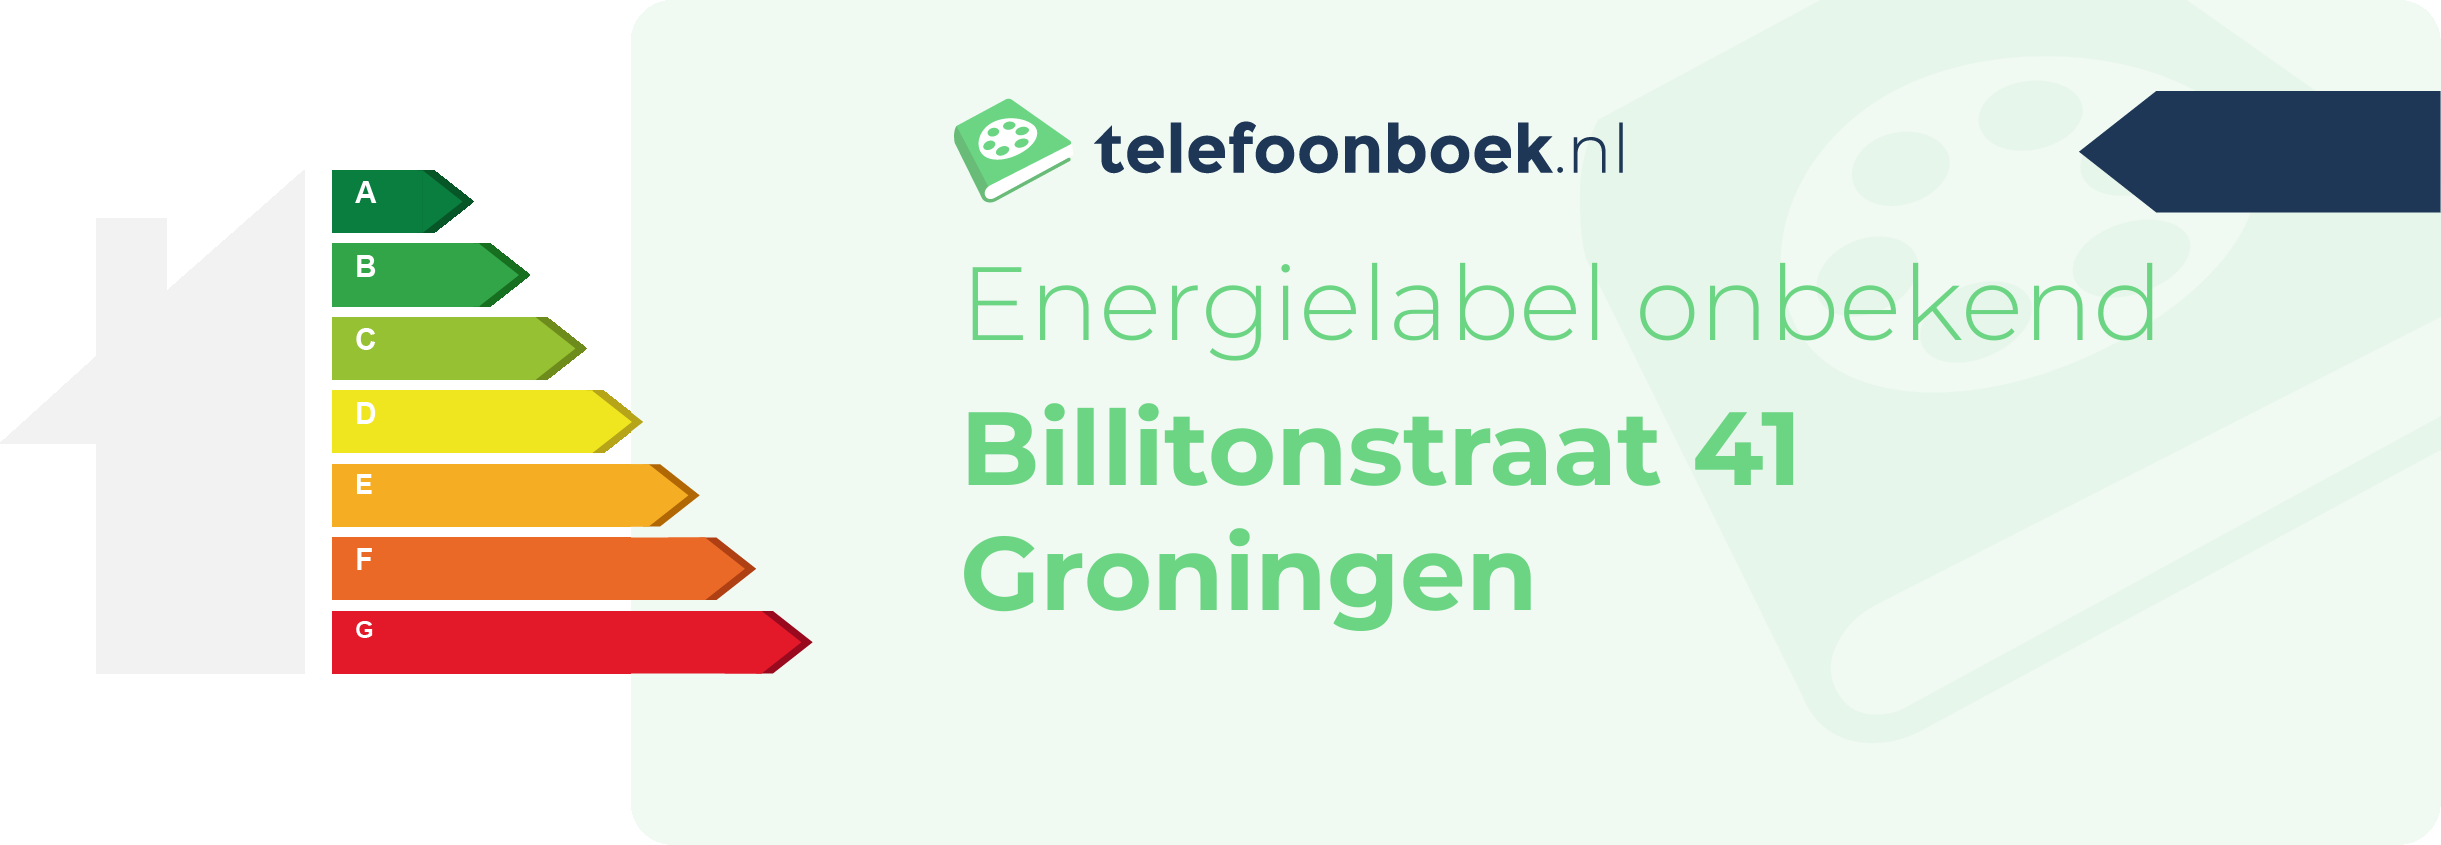 Energielabel Billitonstraat 41 Groningen